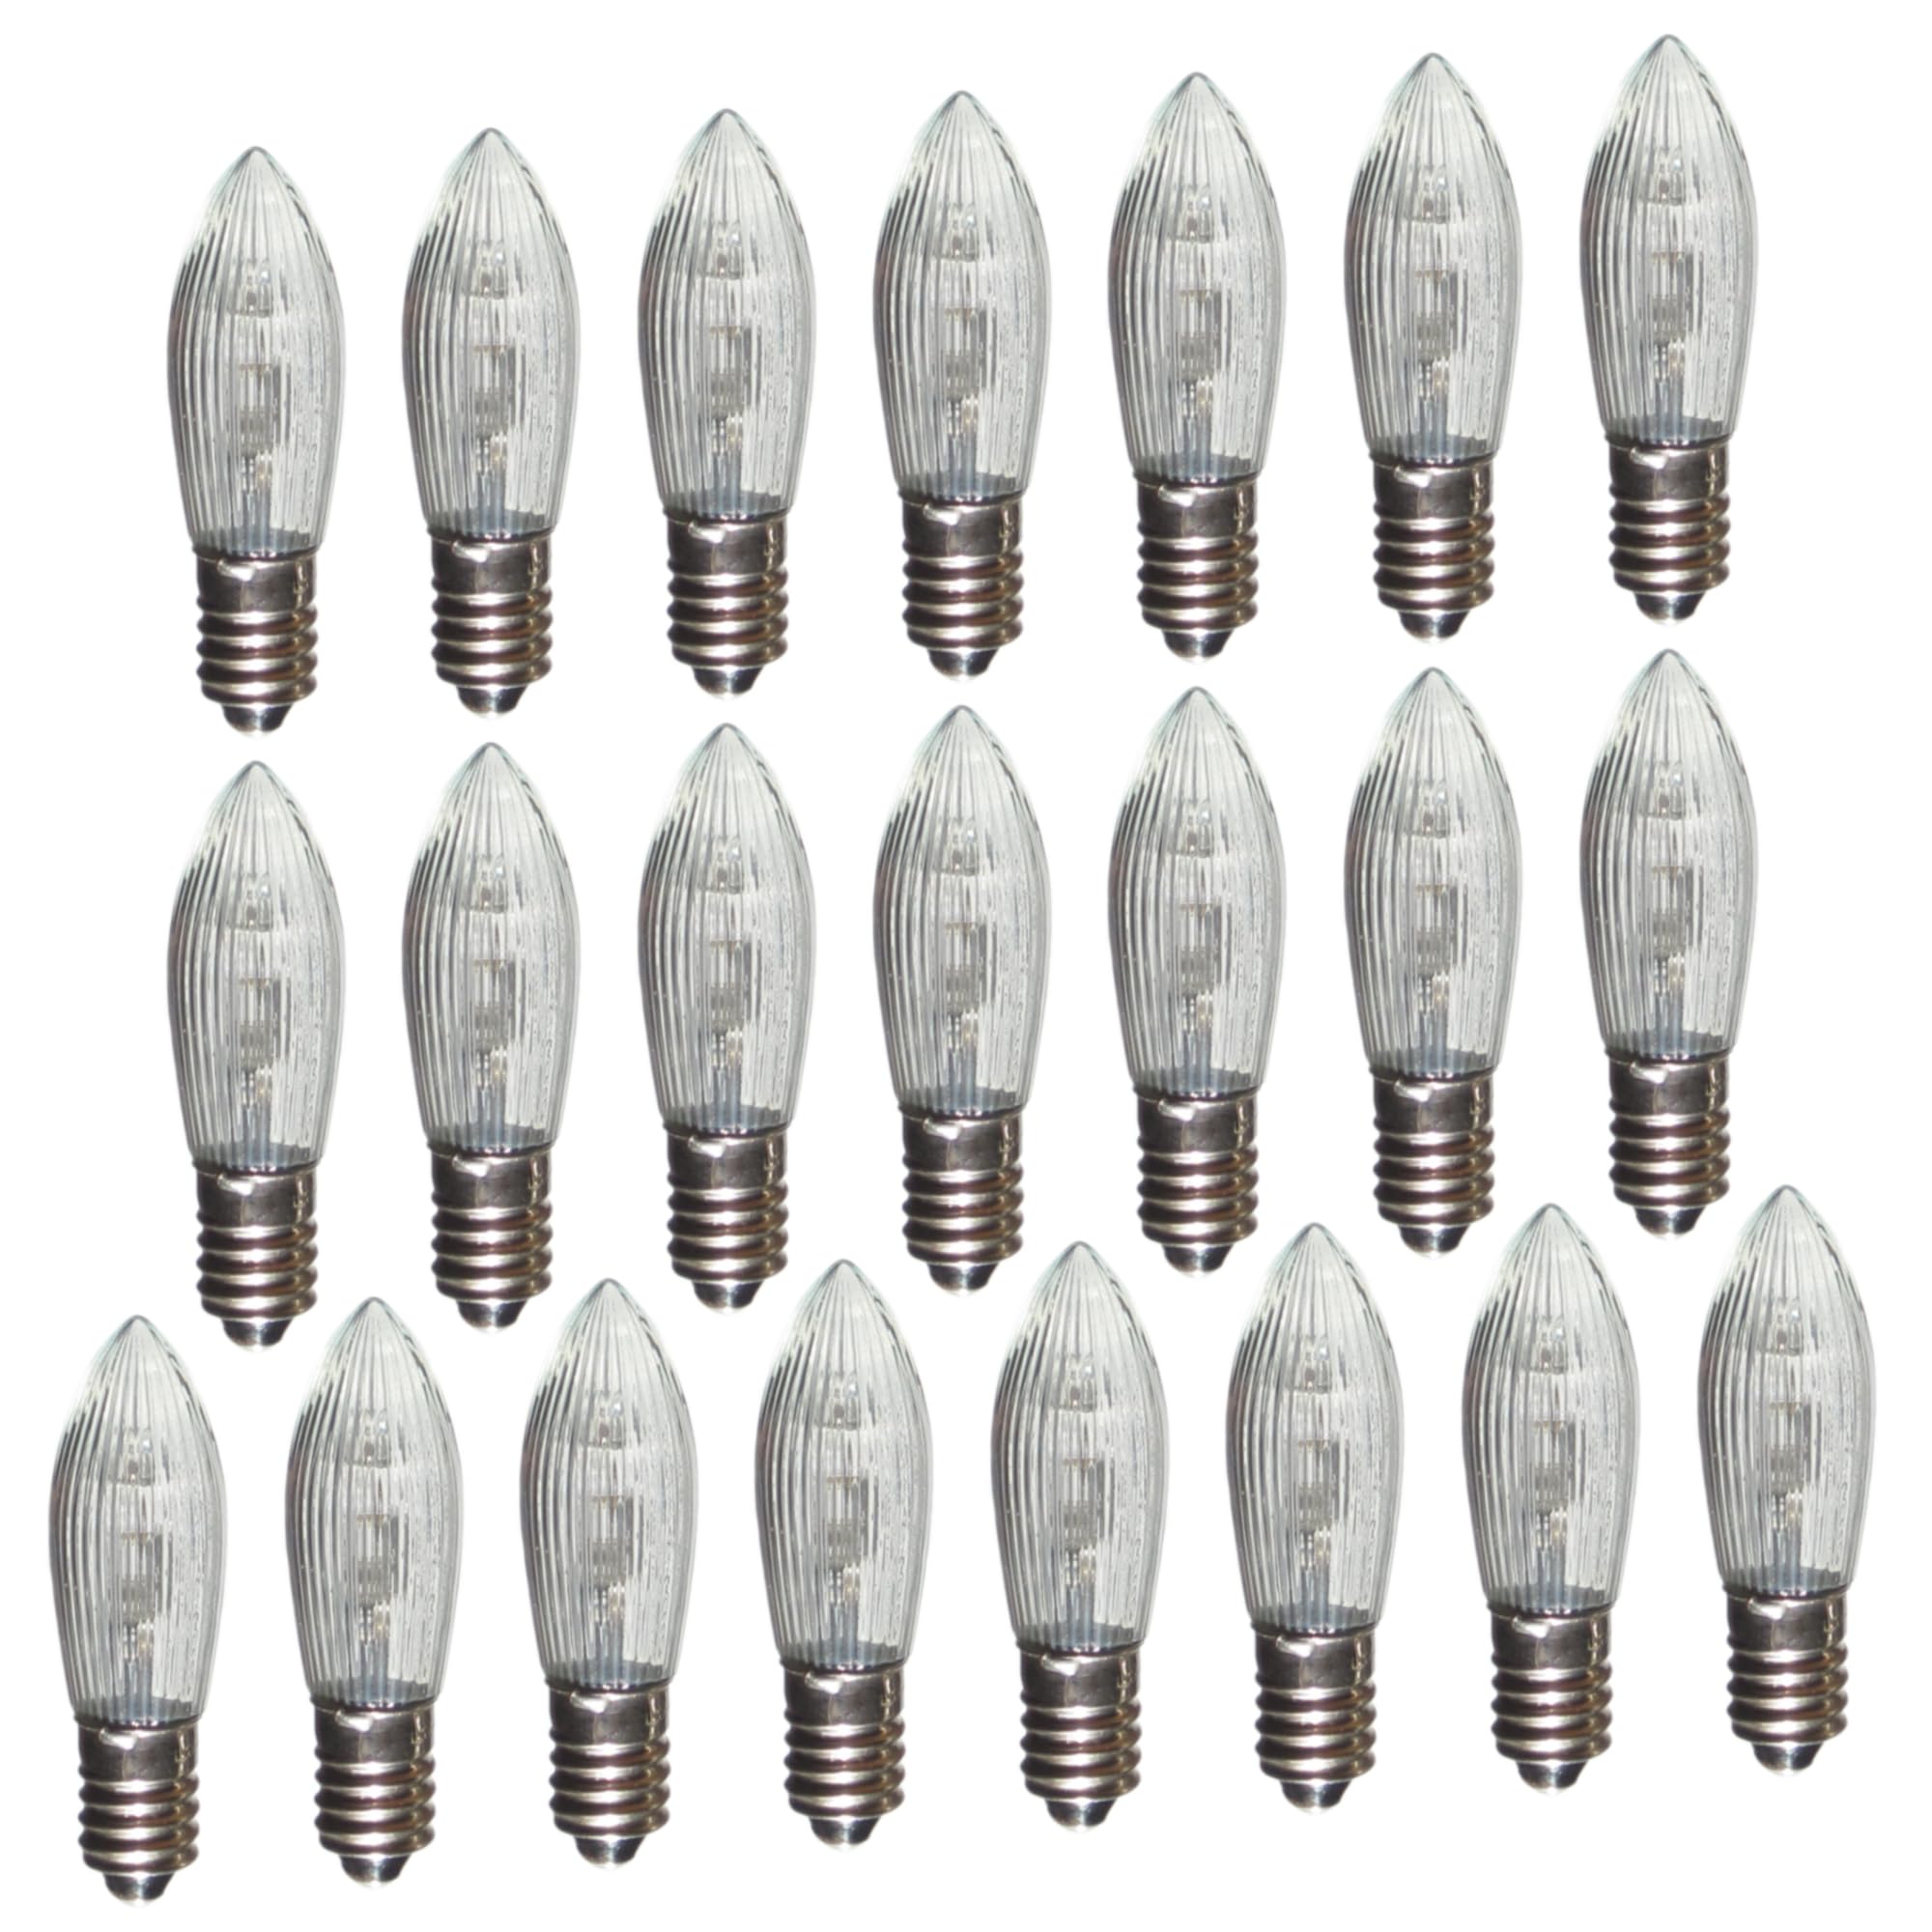 Erzgebirgslicht - AUSWAHL - 22 Stück LED Topkerze 8-55 V 0,1-0,2 W für 4-28 Brennstellen E10 Riffelkerze Ersatzbirne Glühbirne Glühlämpchen für Lichterketten Pyramide Schwibbogen